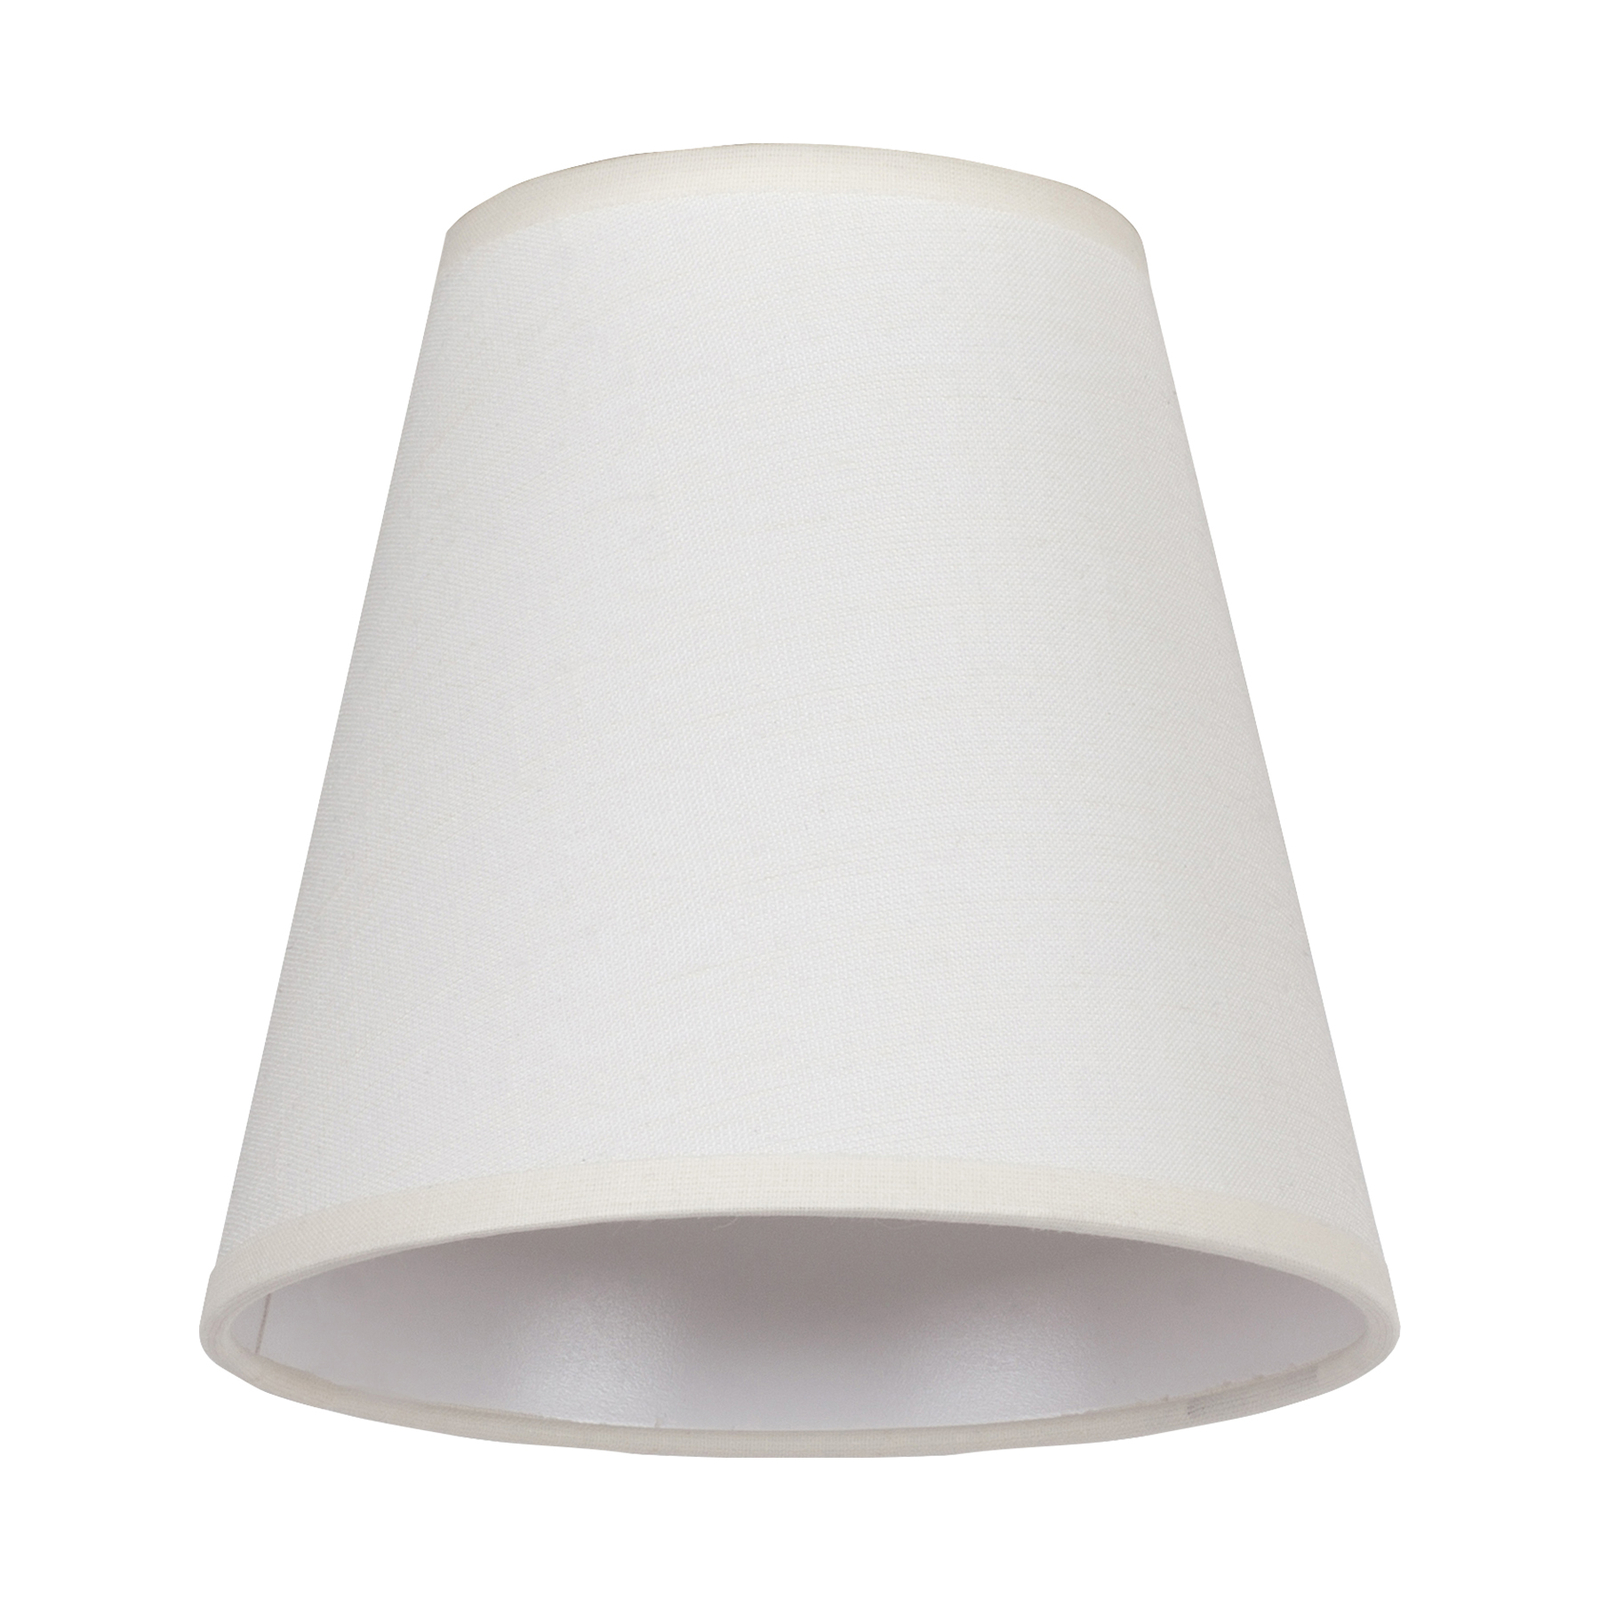 Cone AB lampshade, Ø 15 cm, ecru/textured